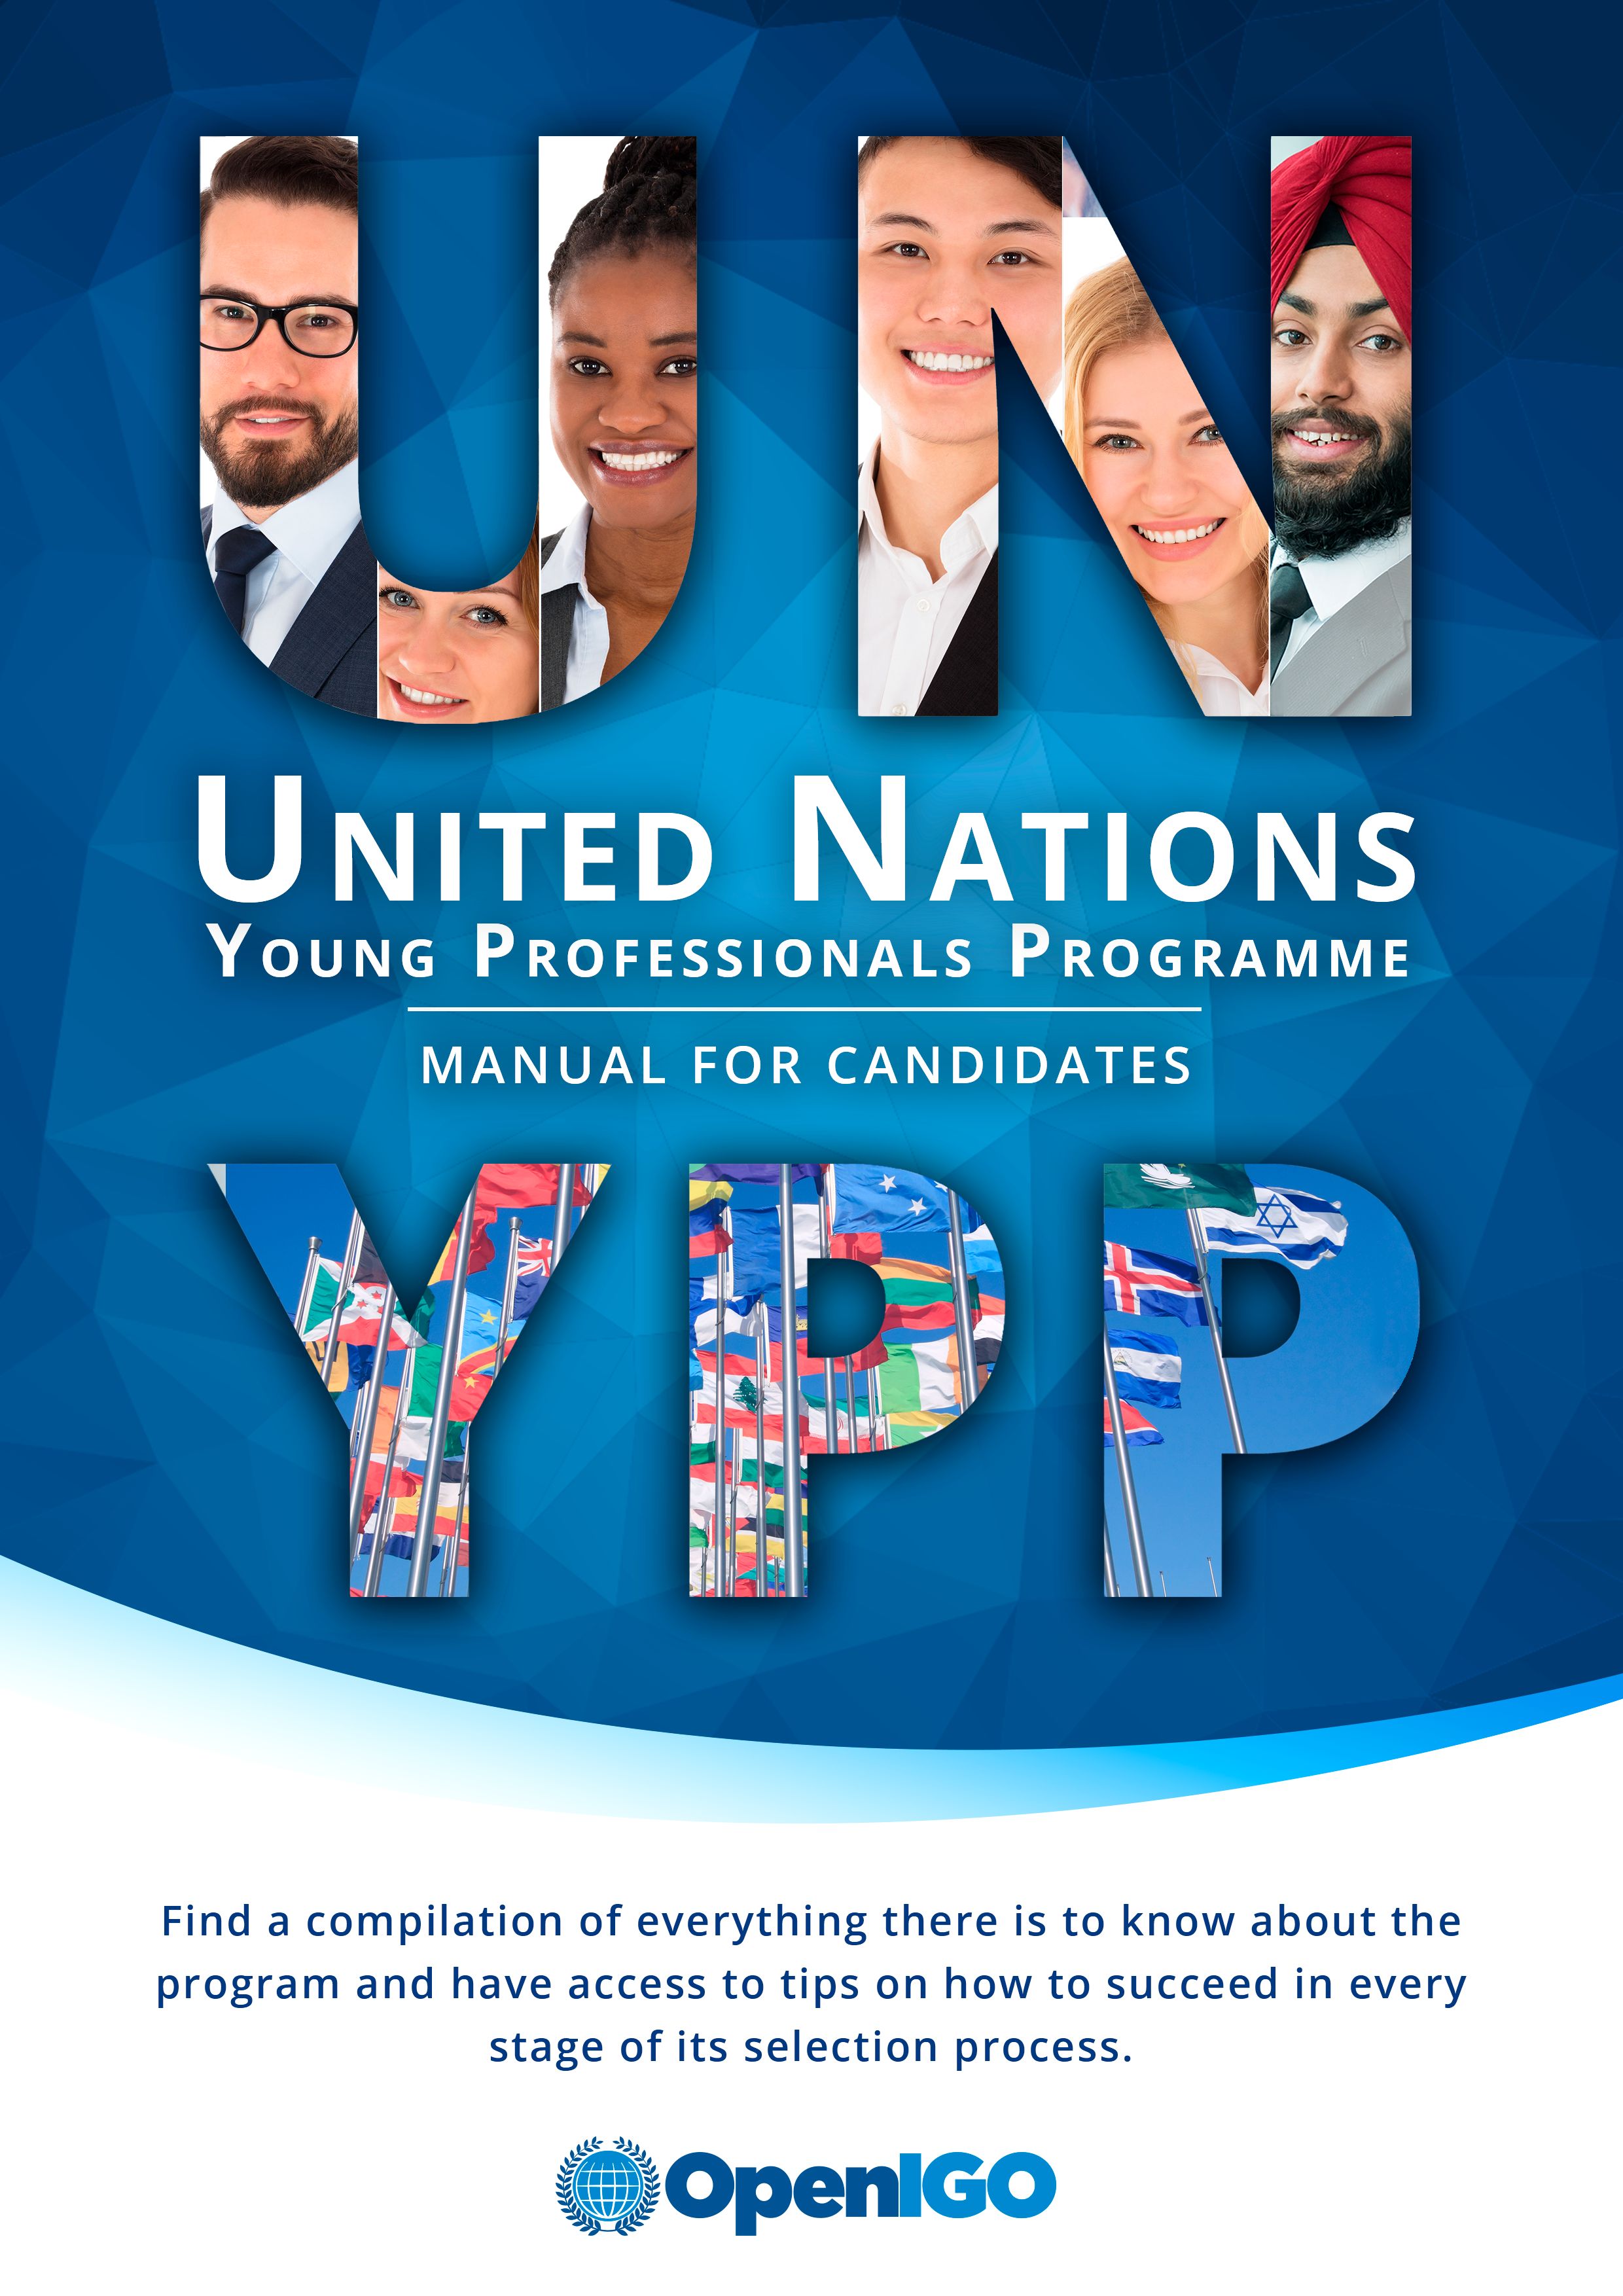 UN YPP Manual